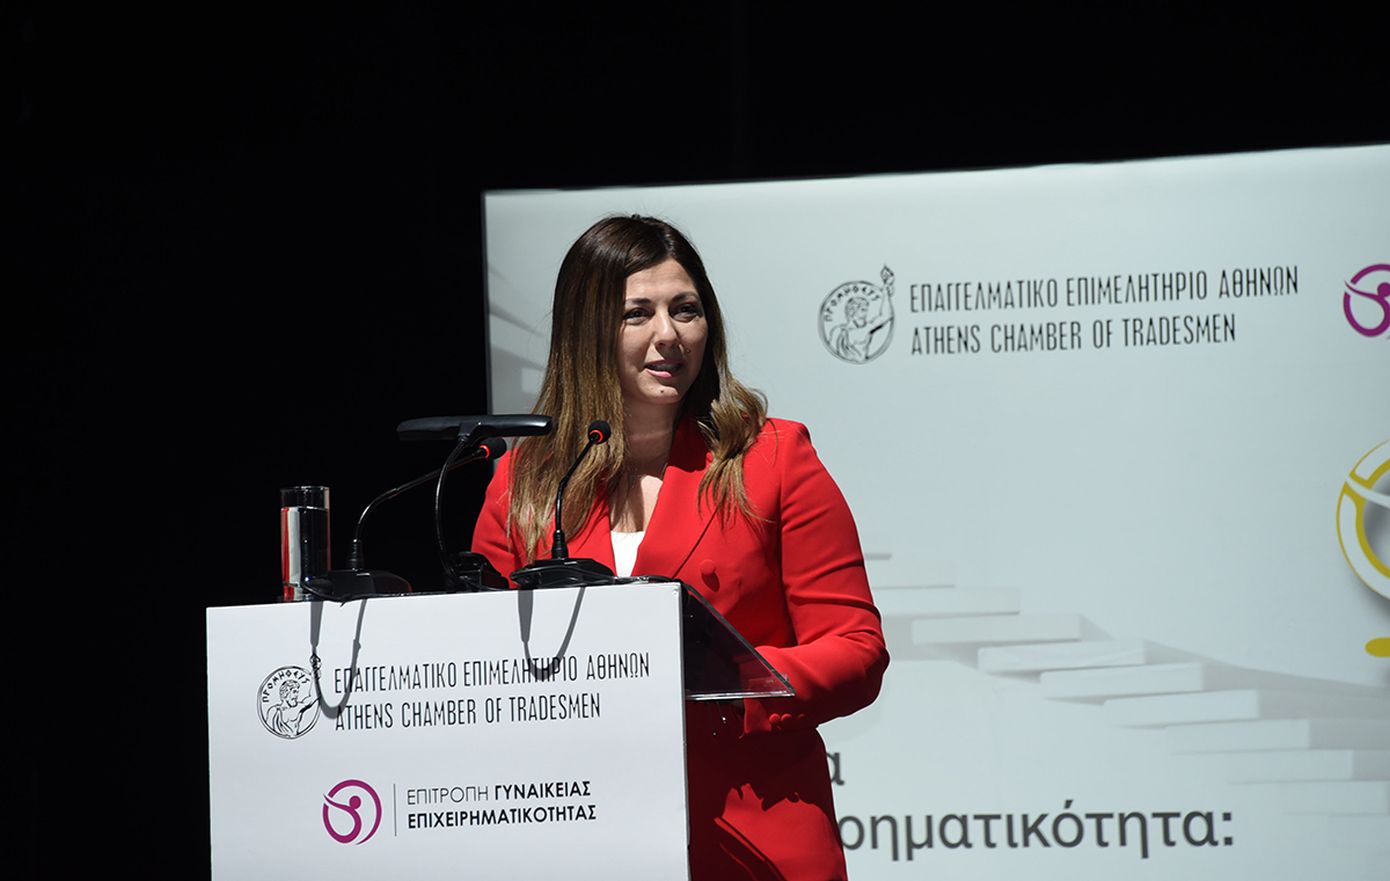 Ζαχαράκη: Χιλιάδες νέες θέσεις σε βρεφονηπιακούς σταθμούς μέσα στα επόμενα δύο χρόνια